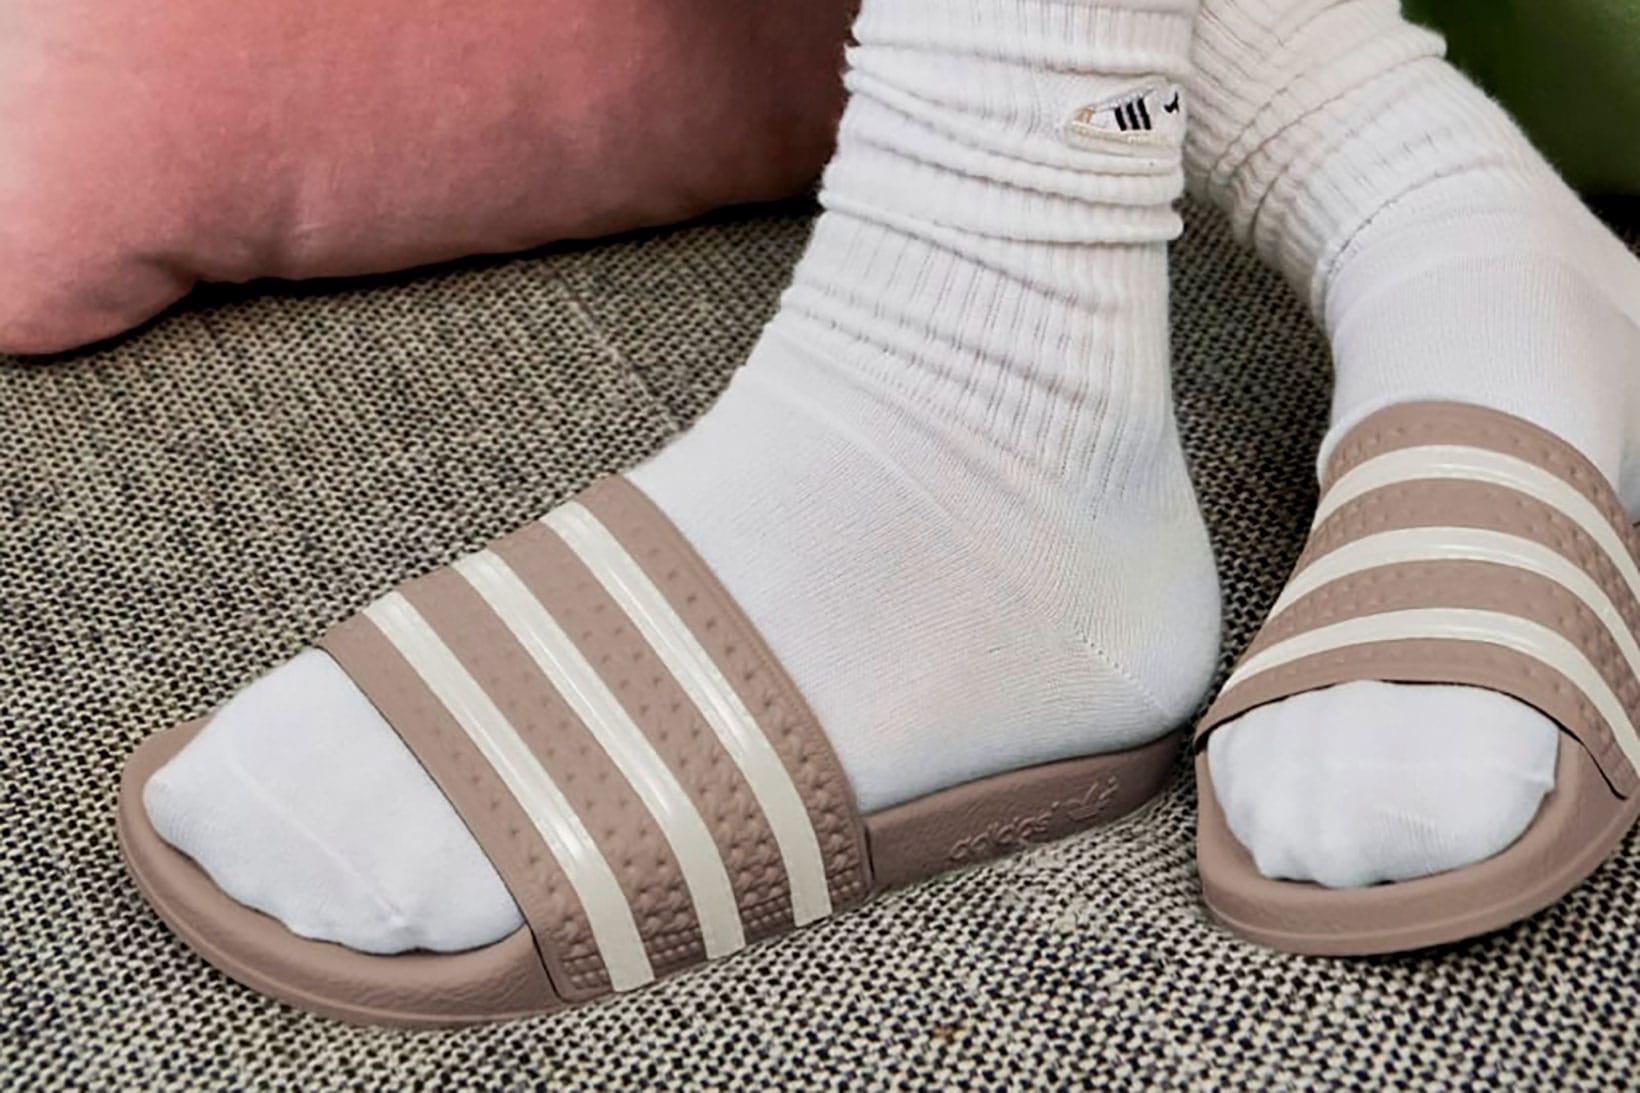 adidas adilette slides on feet